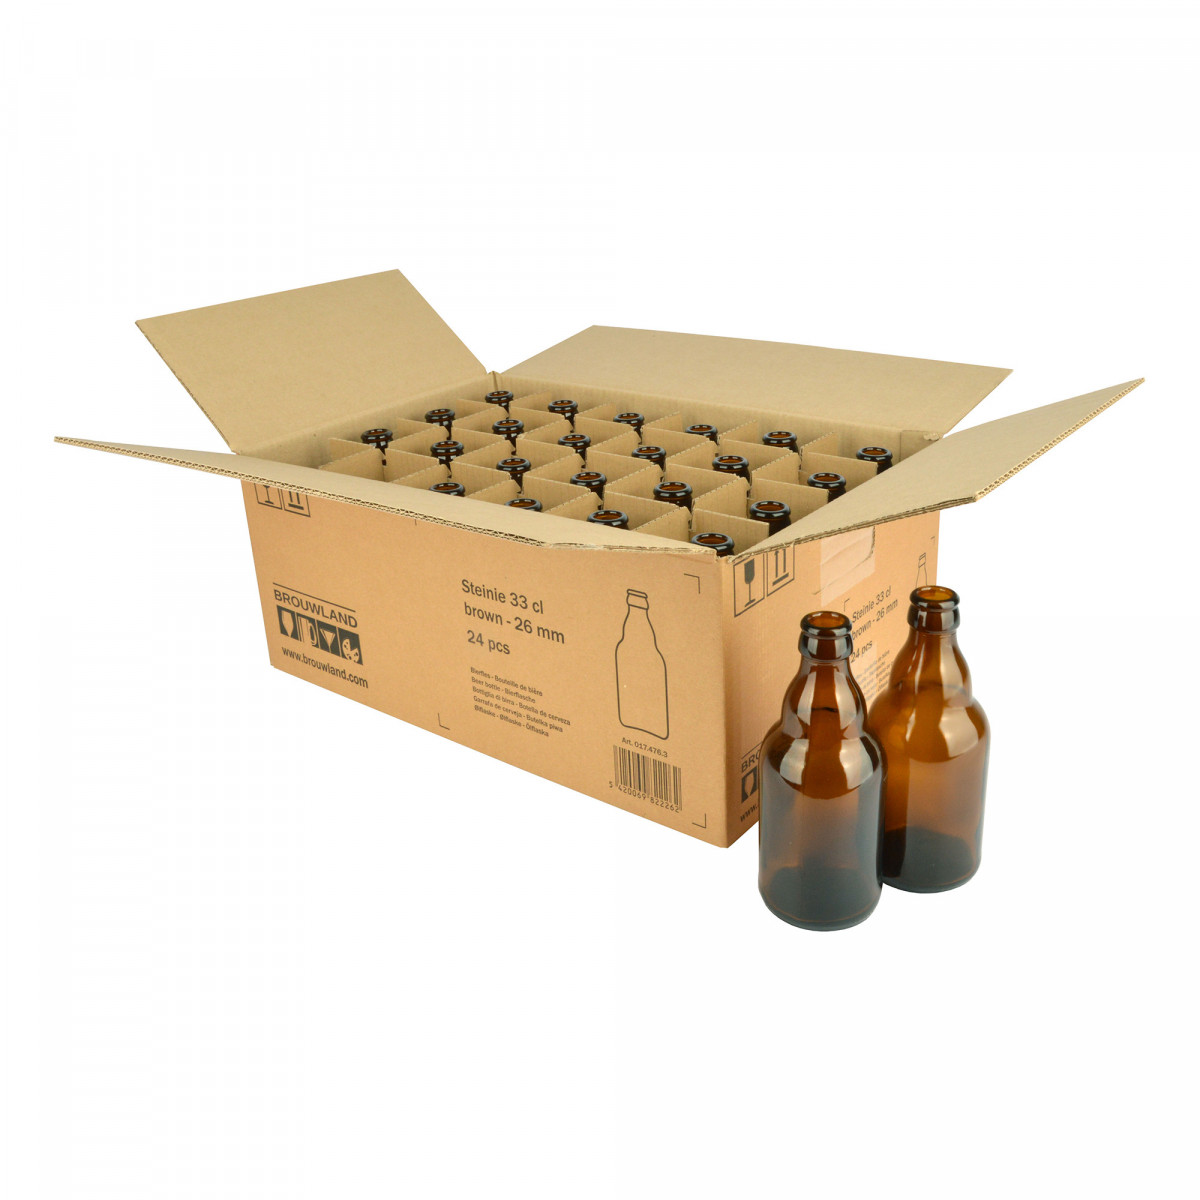 Bouteille de bière Steinie 33 cl, brun, 26 mm, boîte 24 pcs